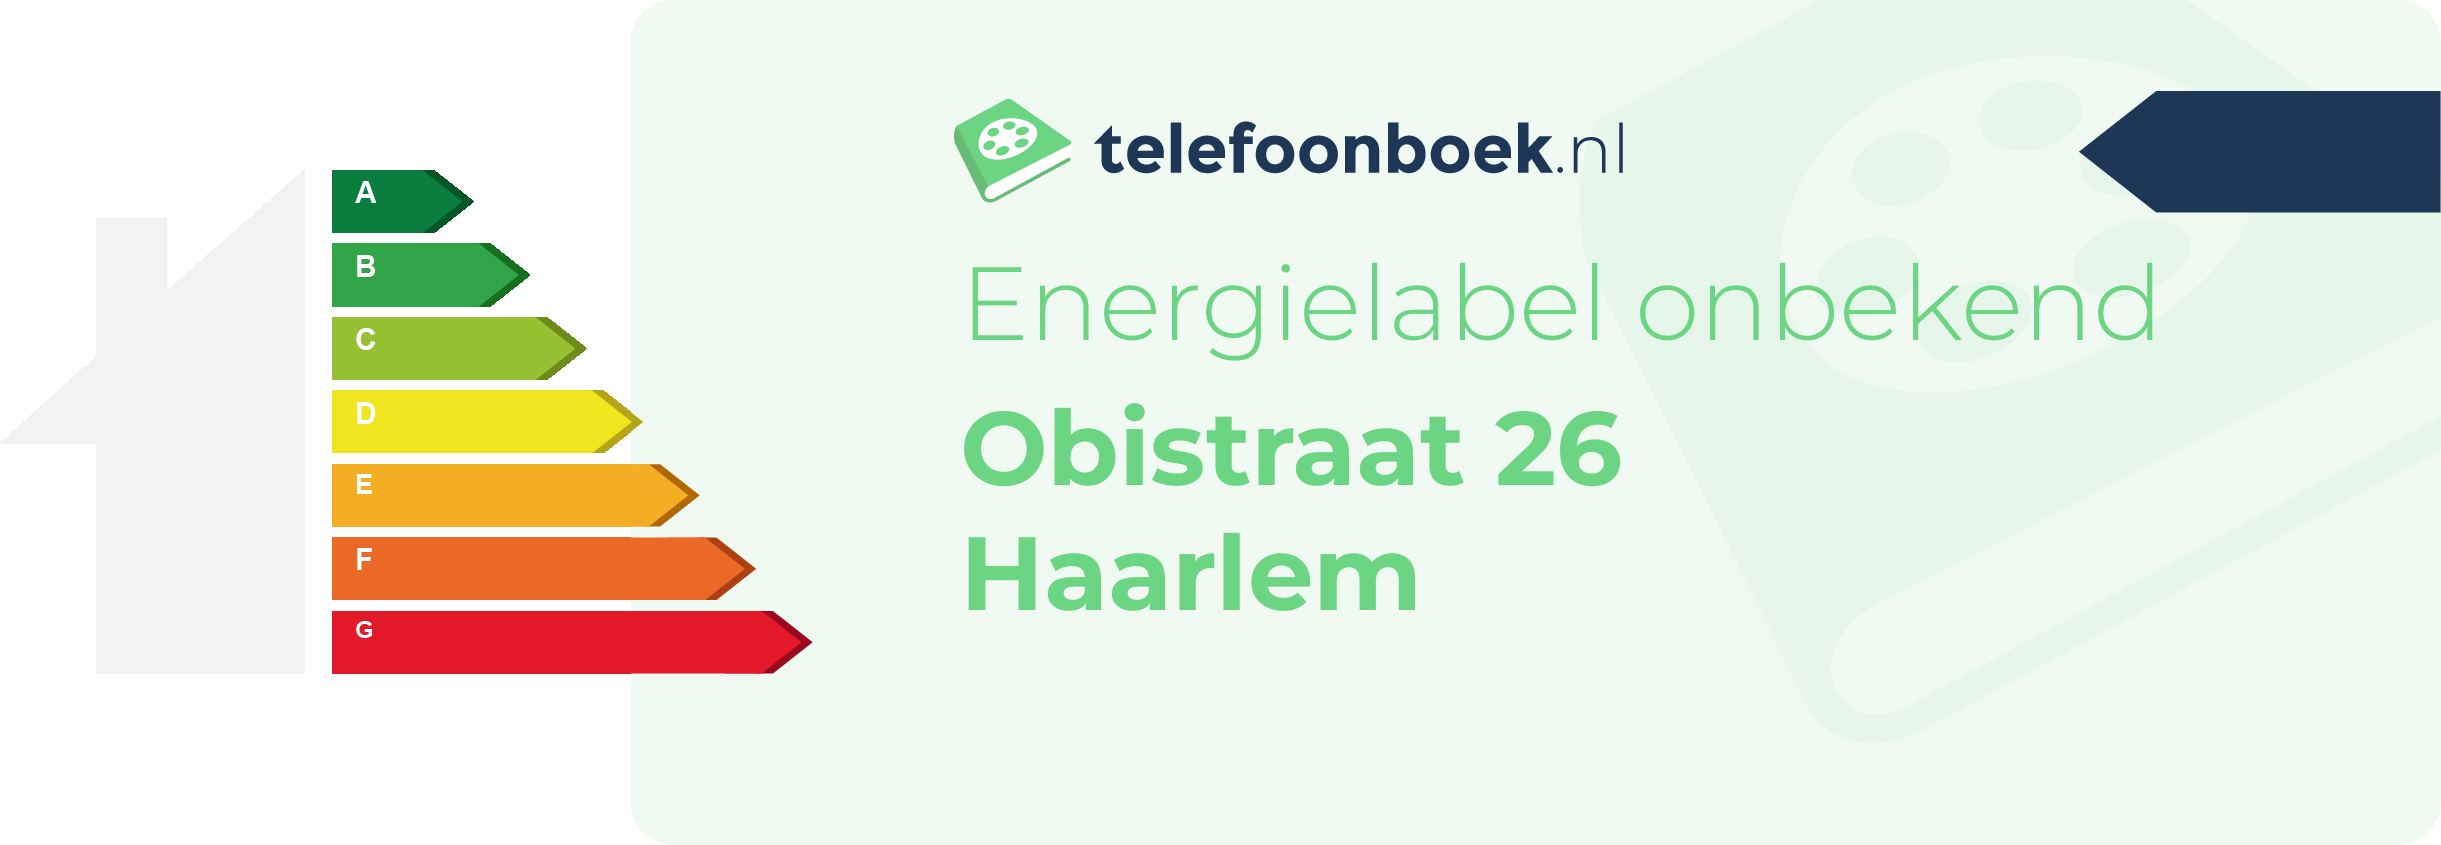 Energielabel Obistraat 26 Haarlem